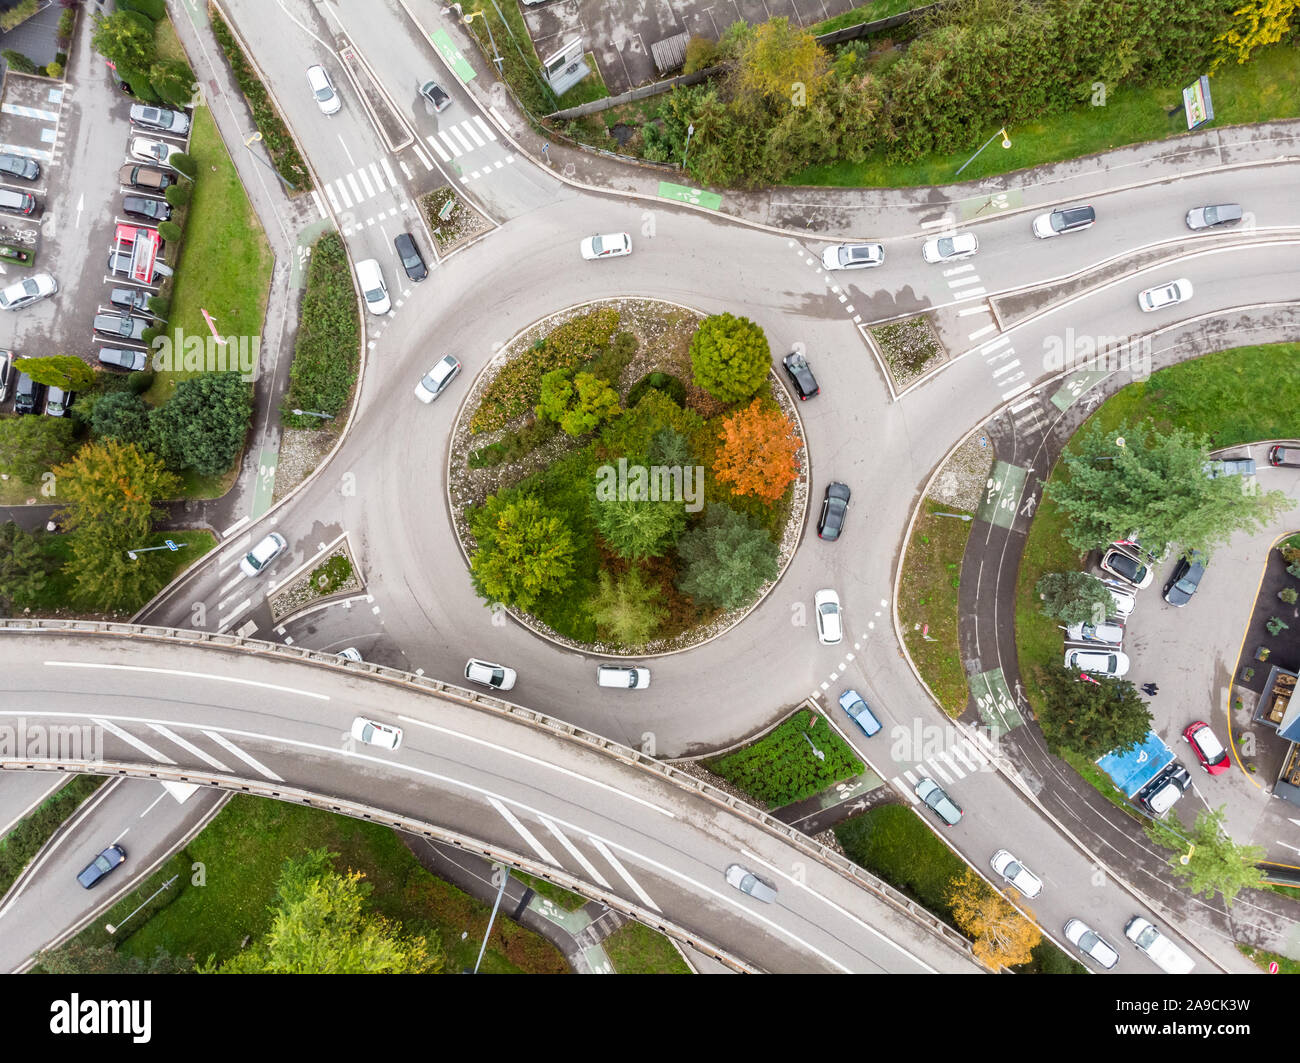 Rond-point road intersection avec la circulation des véhicules et des arbres verts vue aérienne du drone montrant la forme circulaire et les voies de transport, arc de jonction Banque D'Images